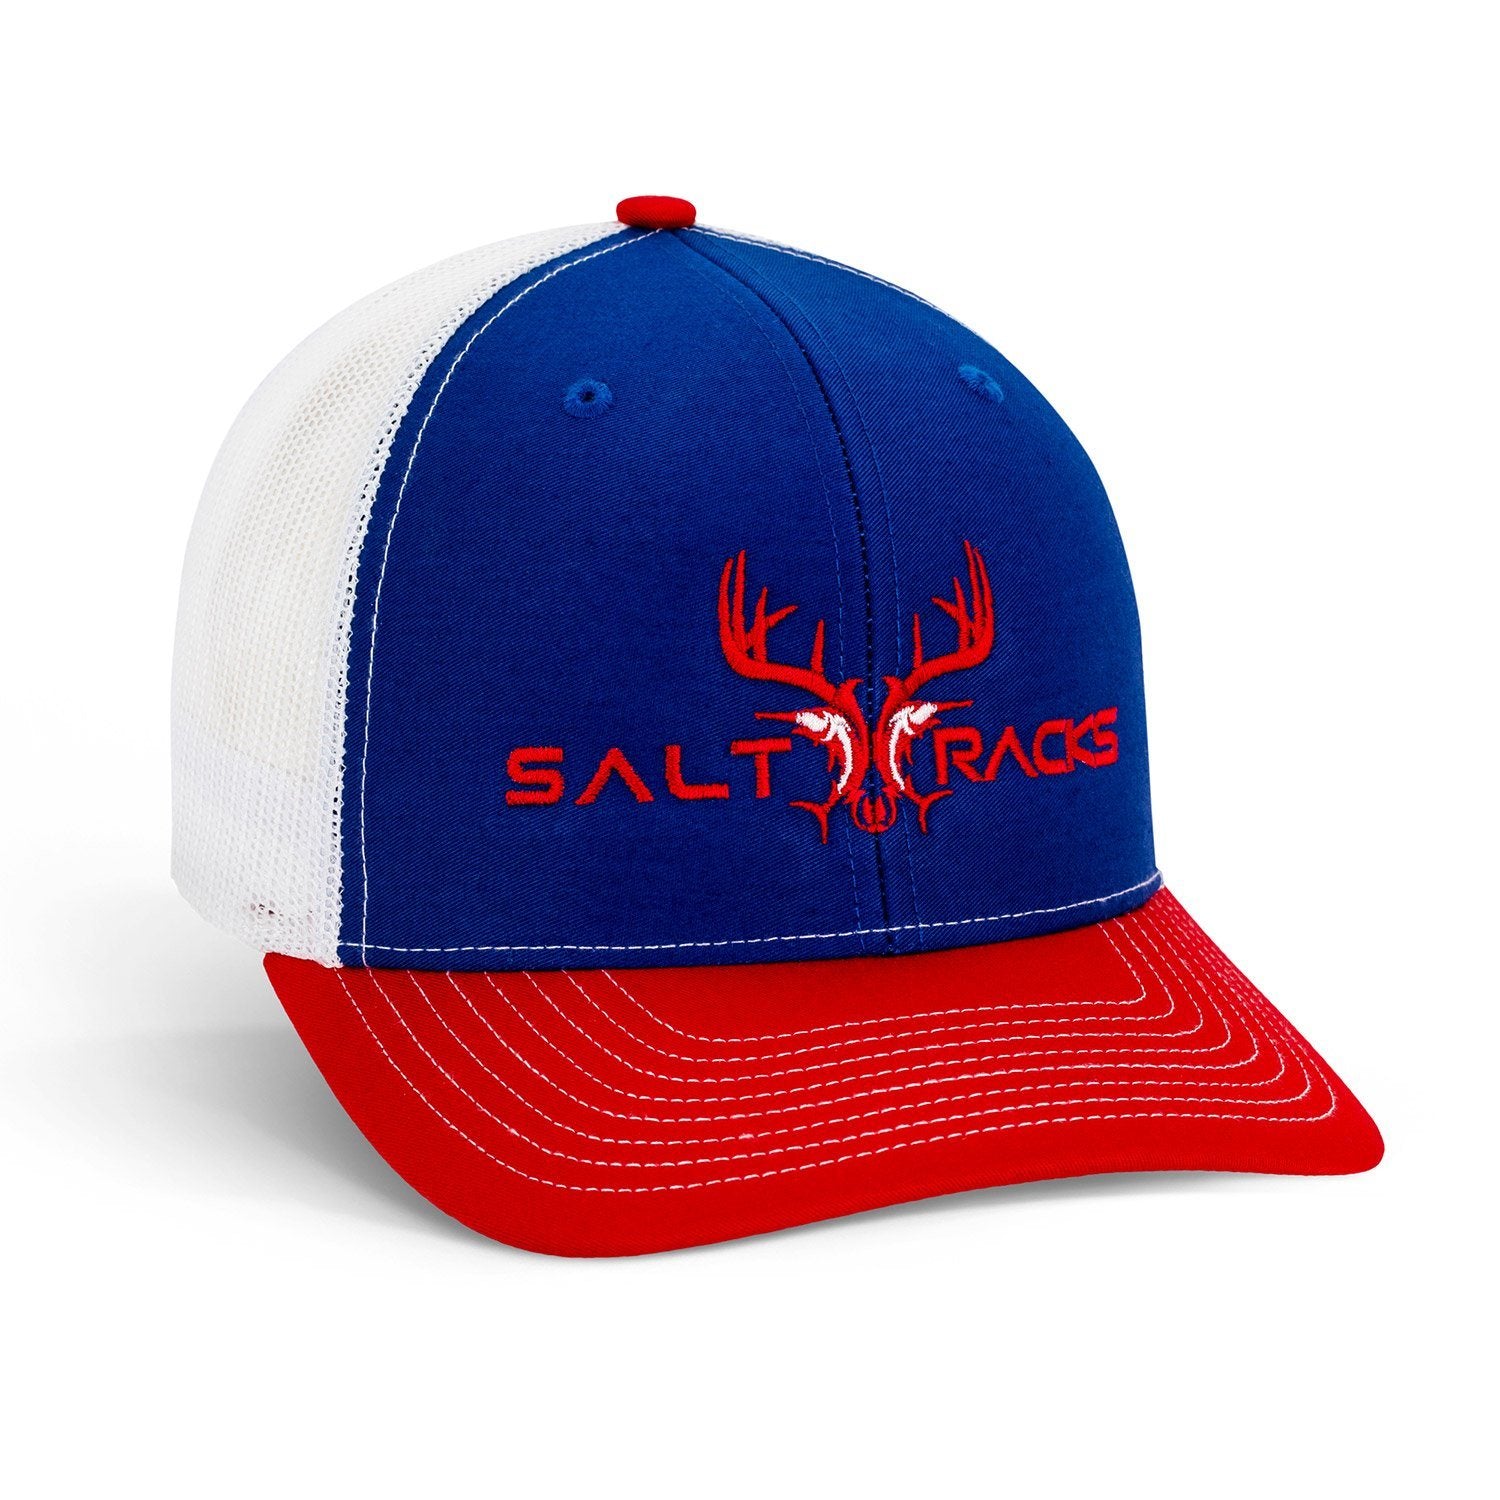 Red/Blue/White Cap – Saltracks